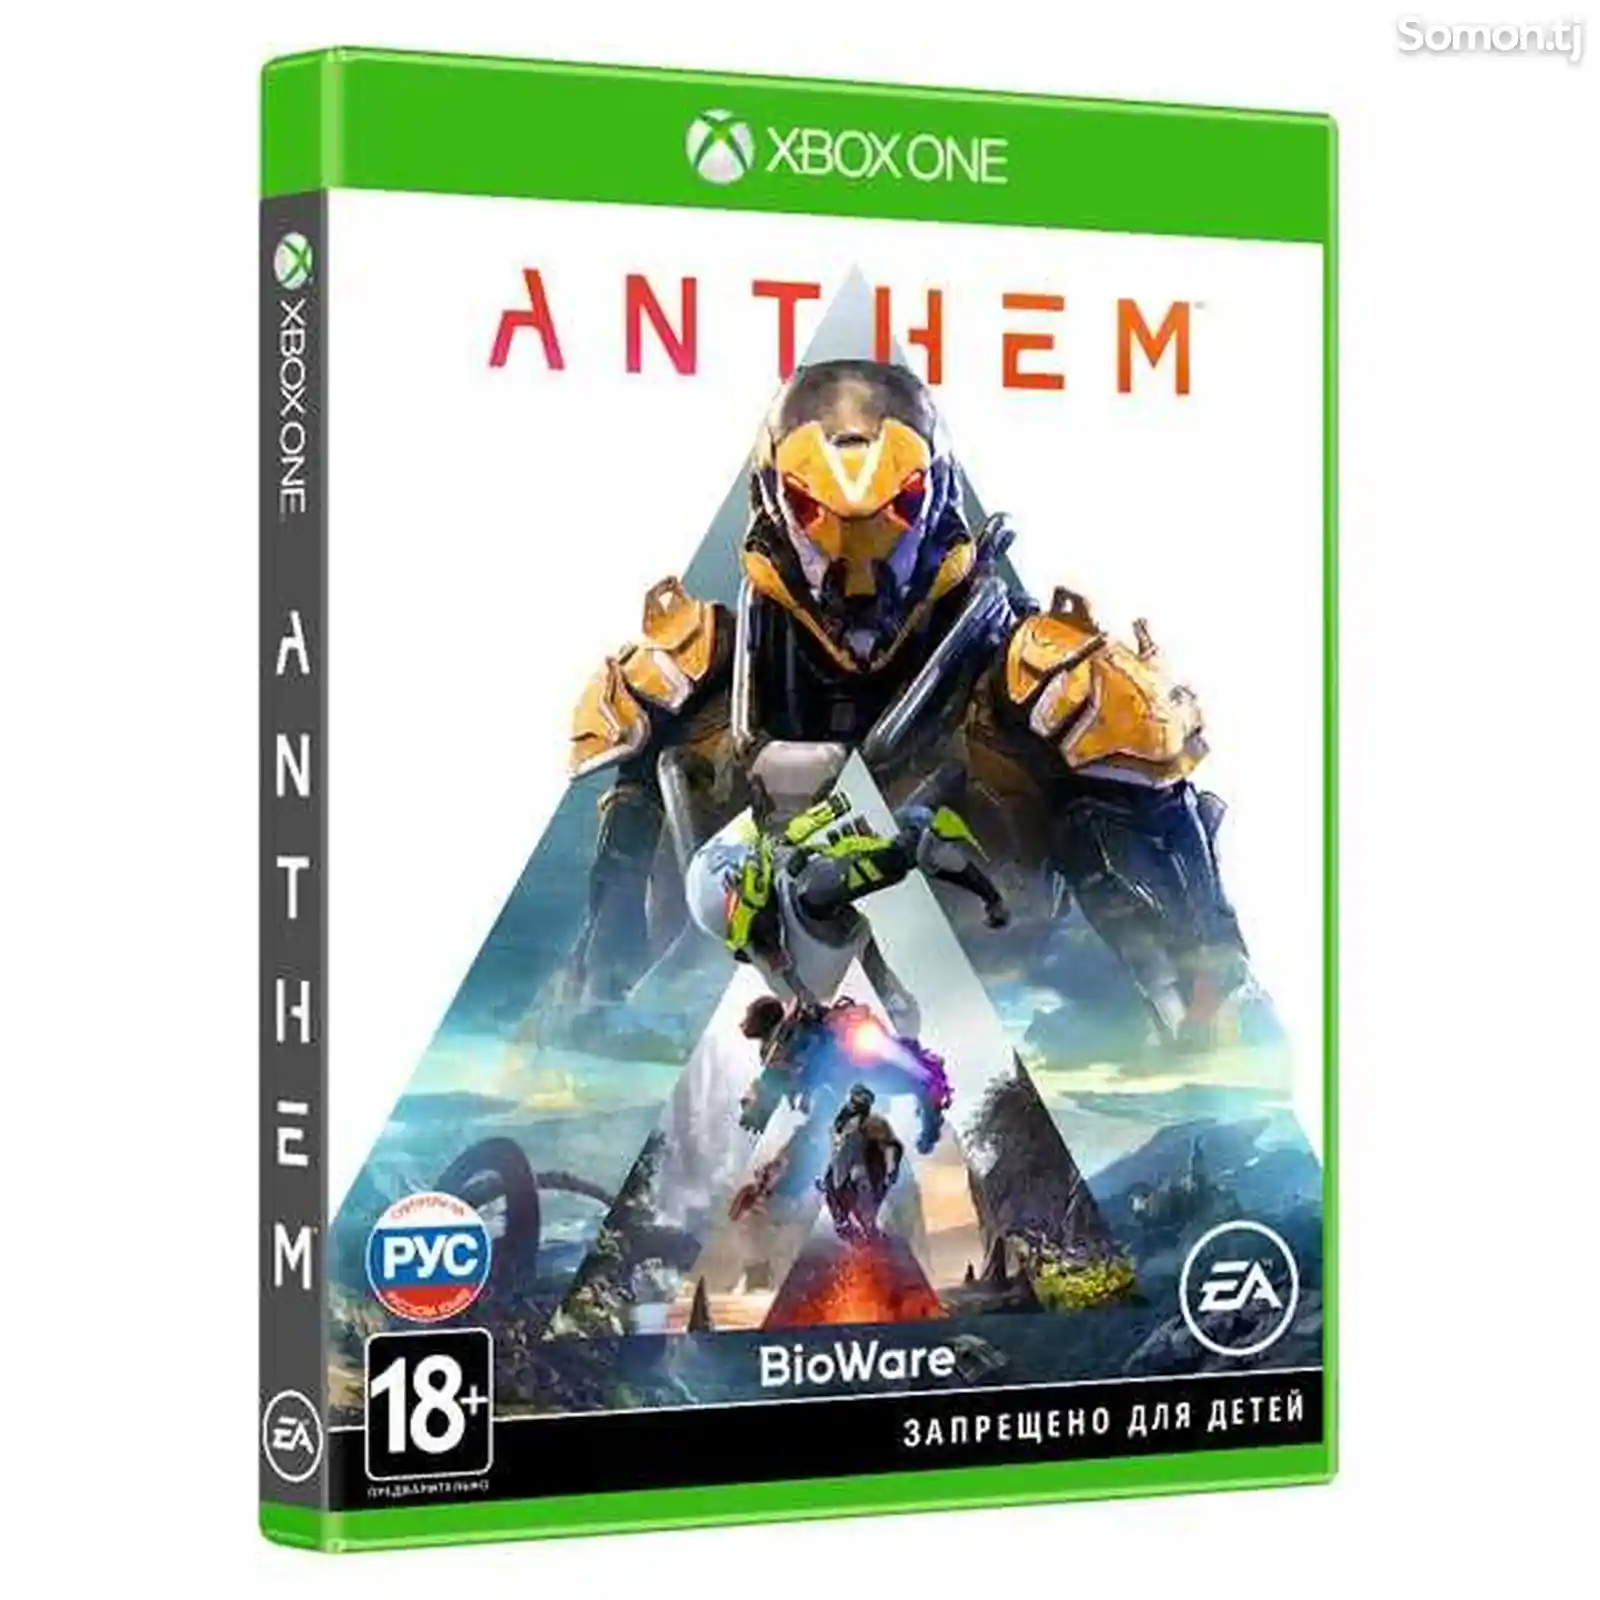 Игра Xbox One игра EA Anthem-1